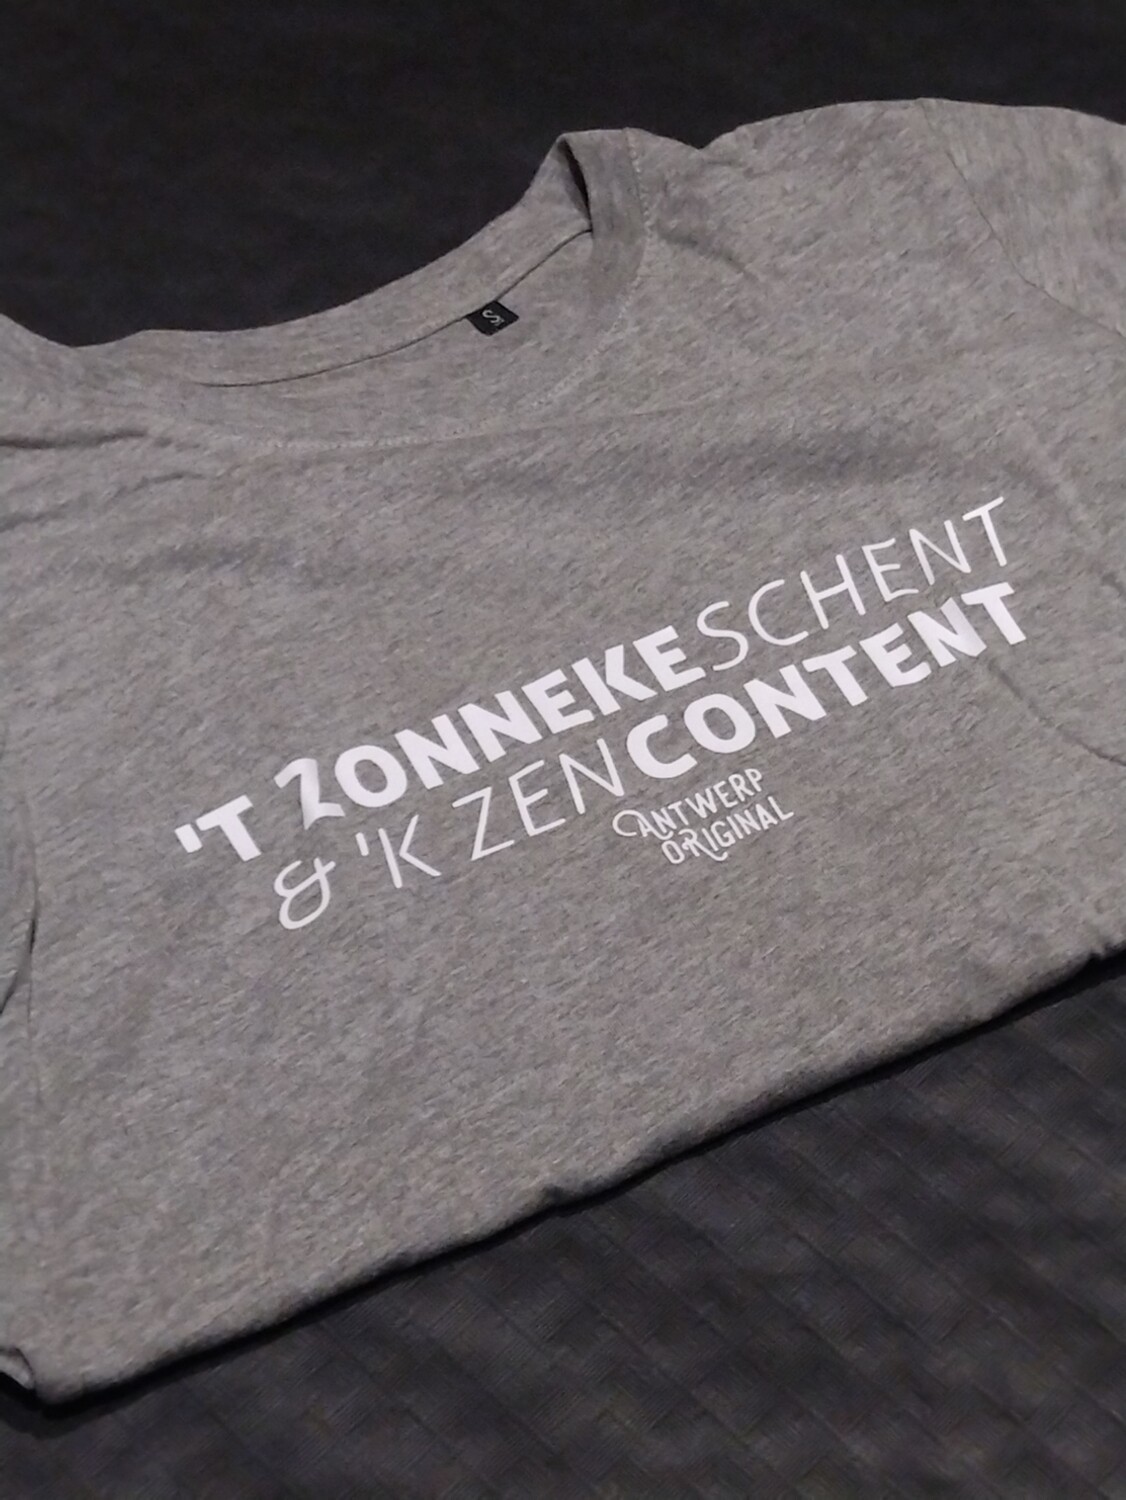 Dames Tshirt - Tzonneke schent & kzen content  -   Small